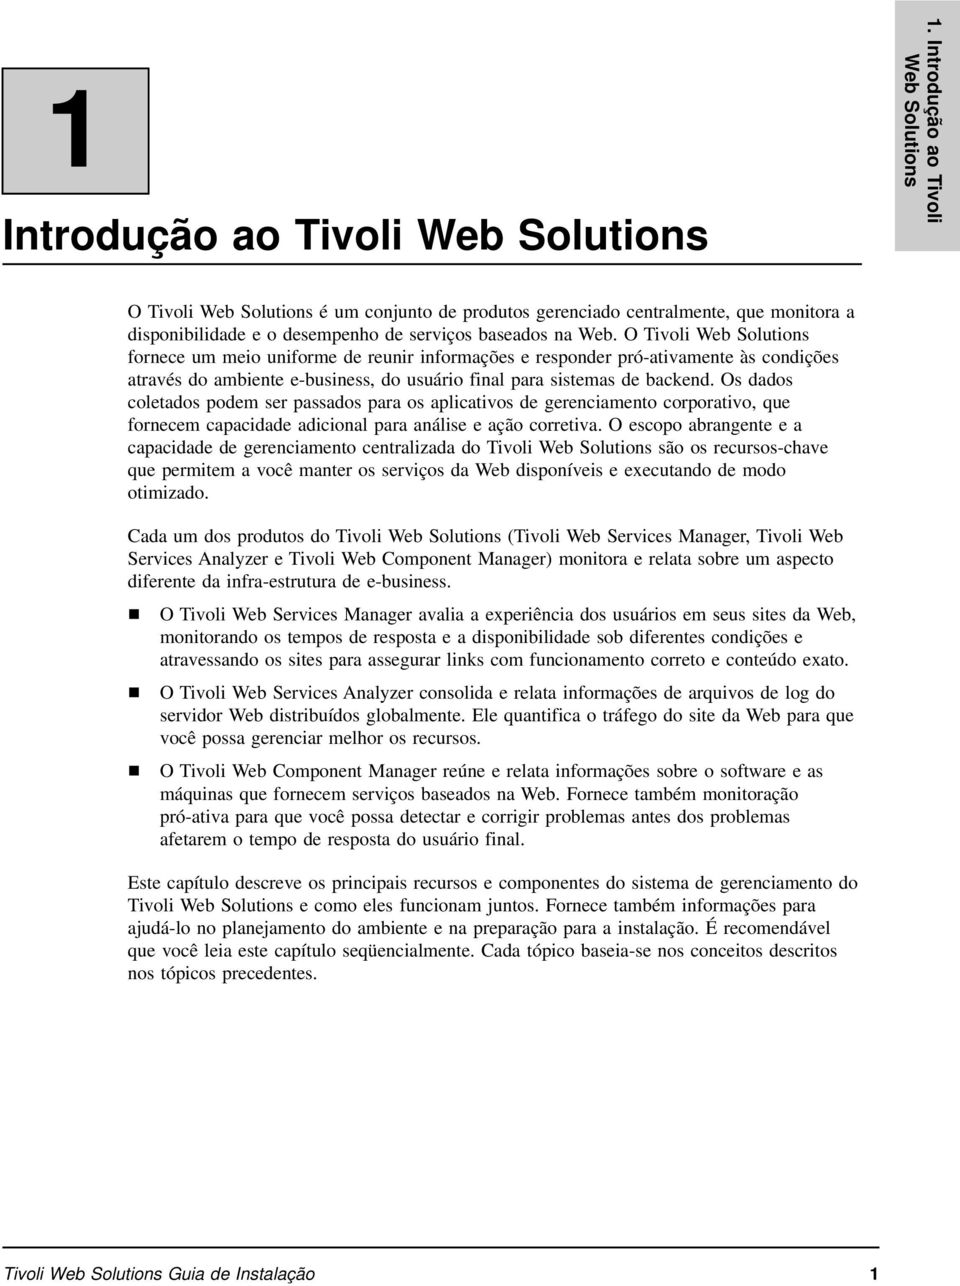 O Tivoli Web Solutions fornece um meio uniforme de reunir informações e responder pró-ativamente às condições através do ambiente e-business, do usuário final para sistemas de backend.